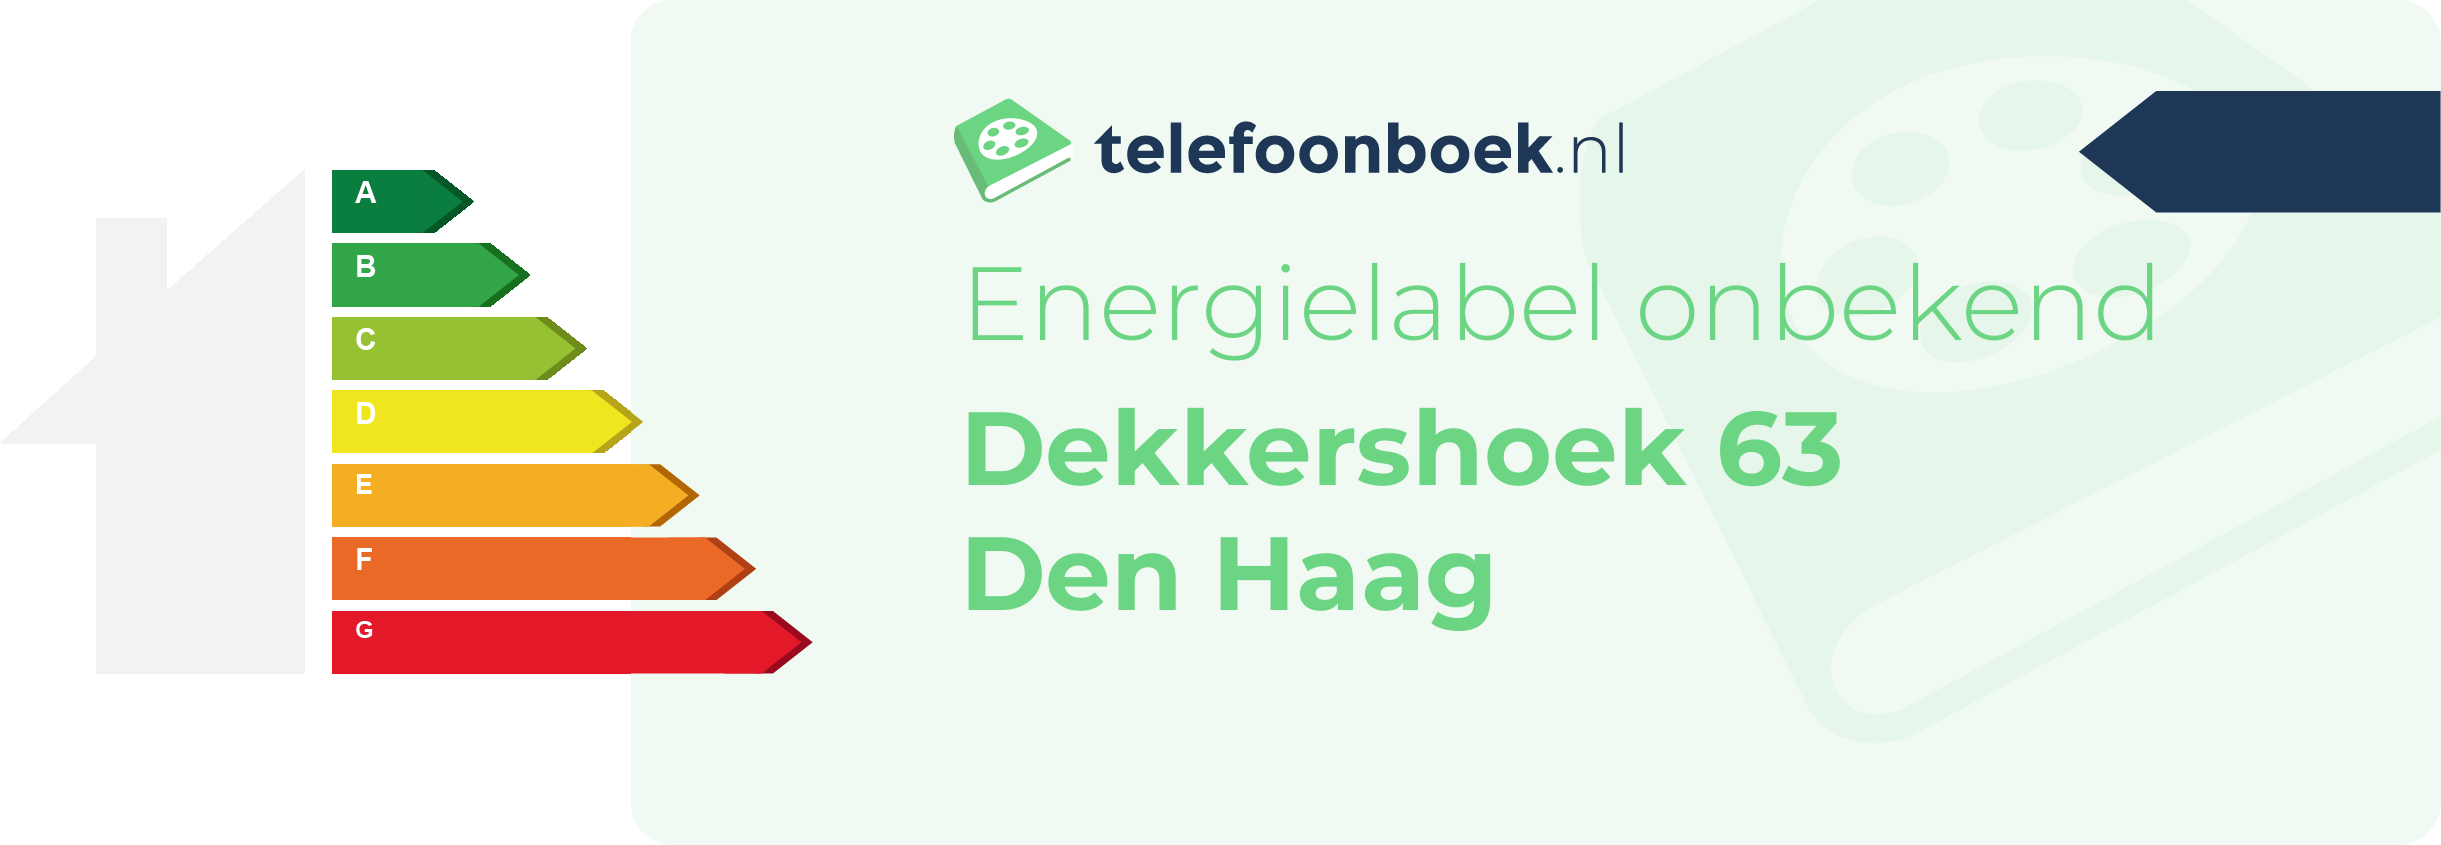 Energielabel Dekkershoek 63 Den Haag